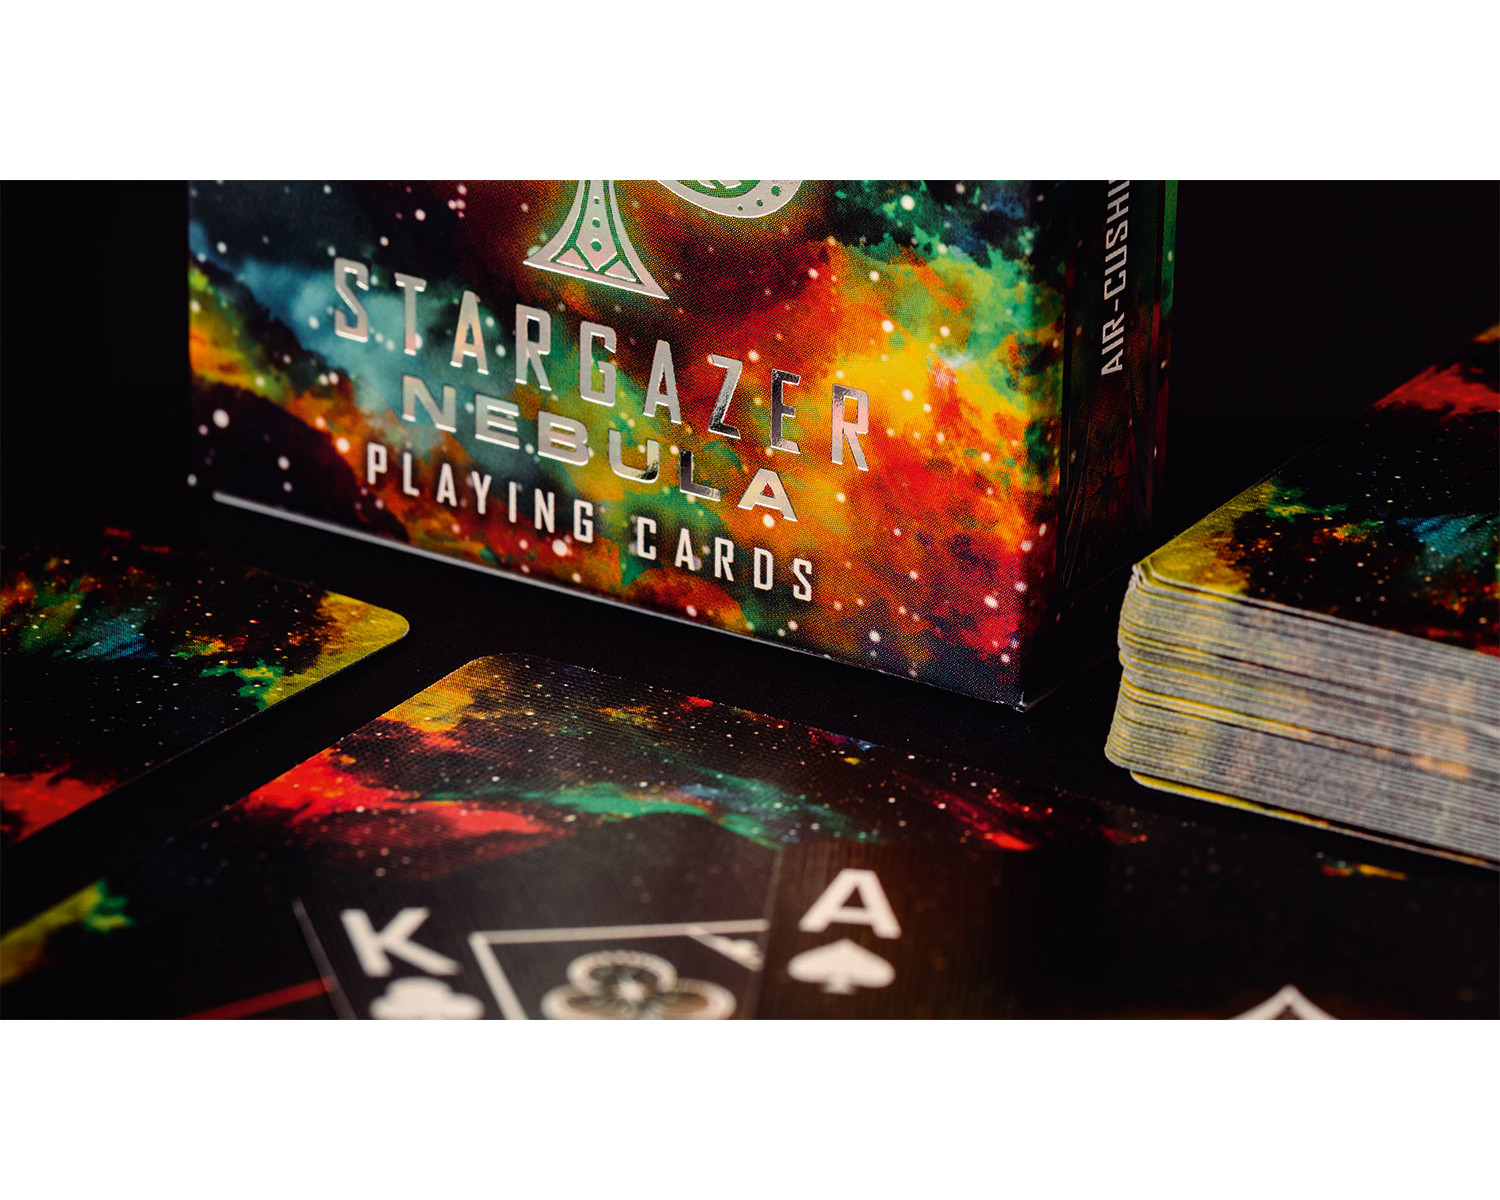 ASS ALTENBURGER Bicycle Kartendeck - Stargazer Nebula Kartenspiel